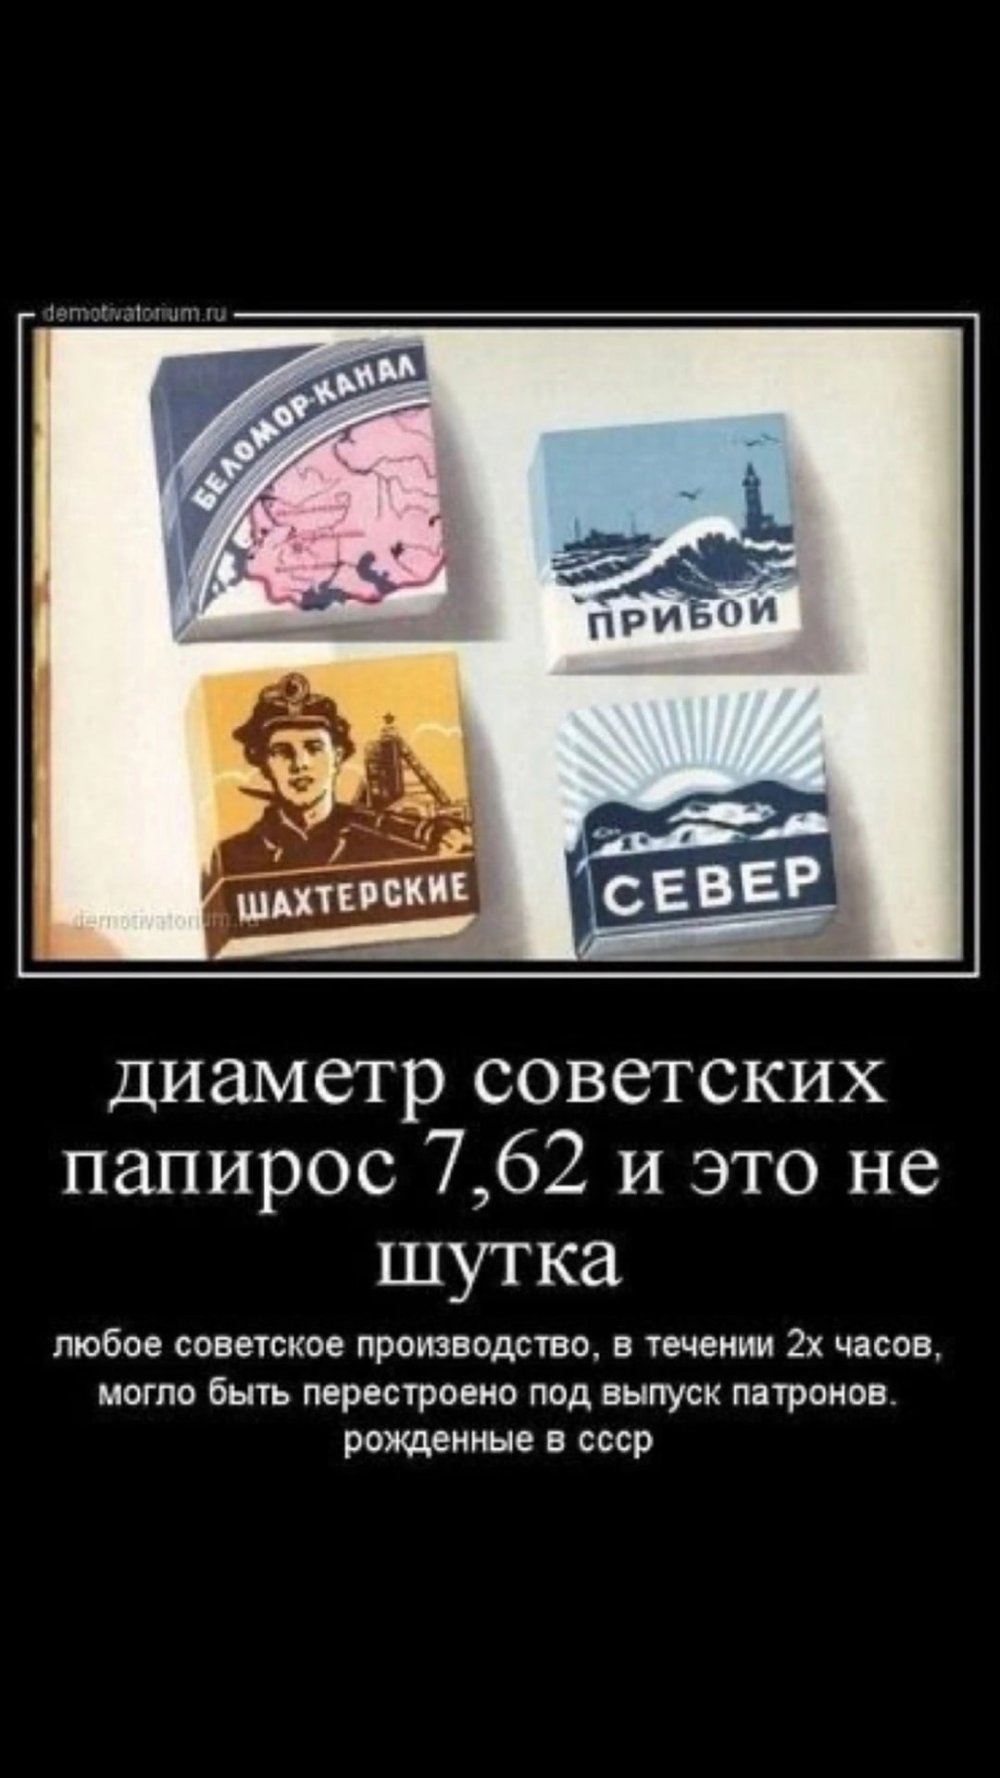 Смешные советские карикатуры